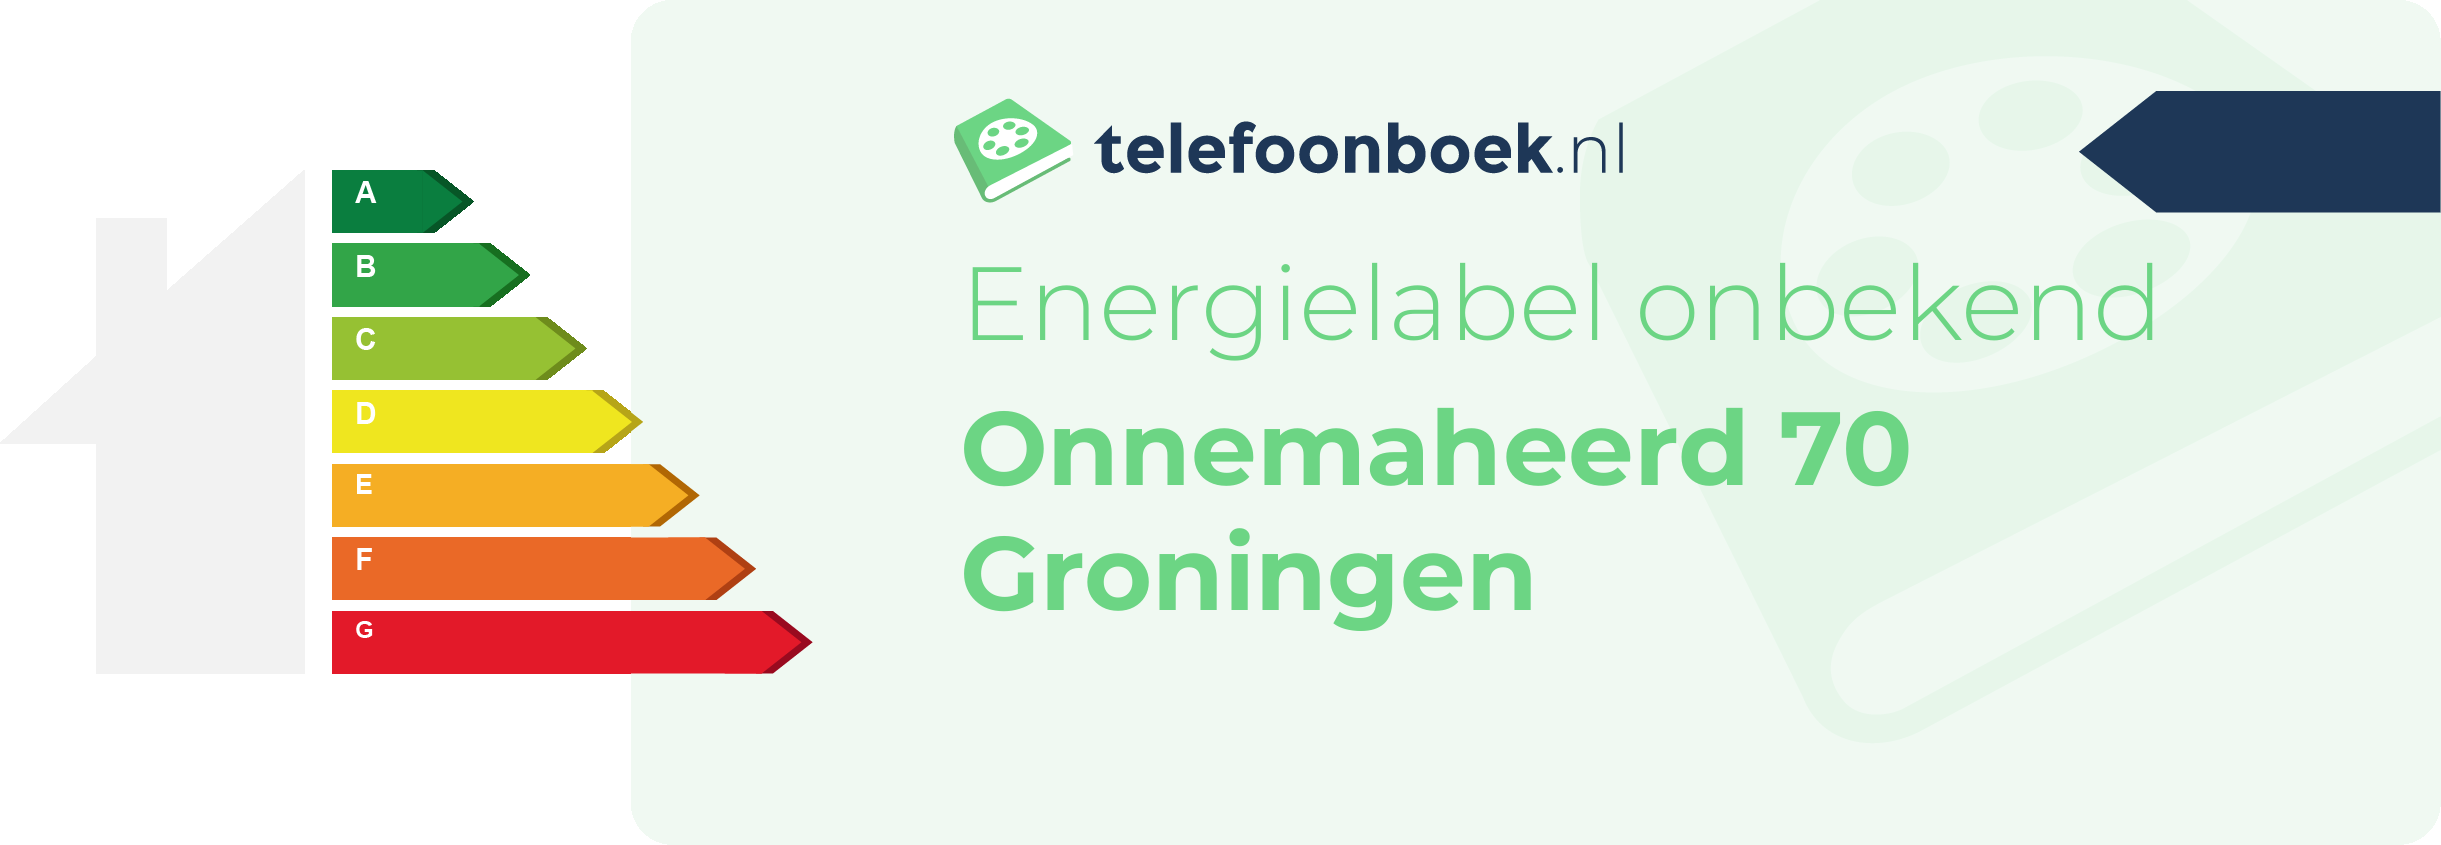 Energielabel Onnemaheerd 70 Groningen